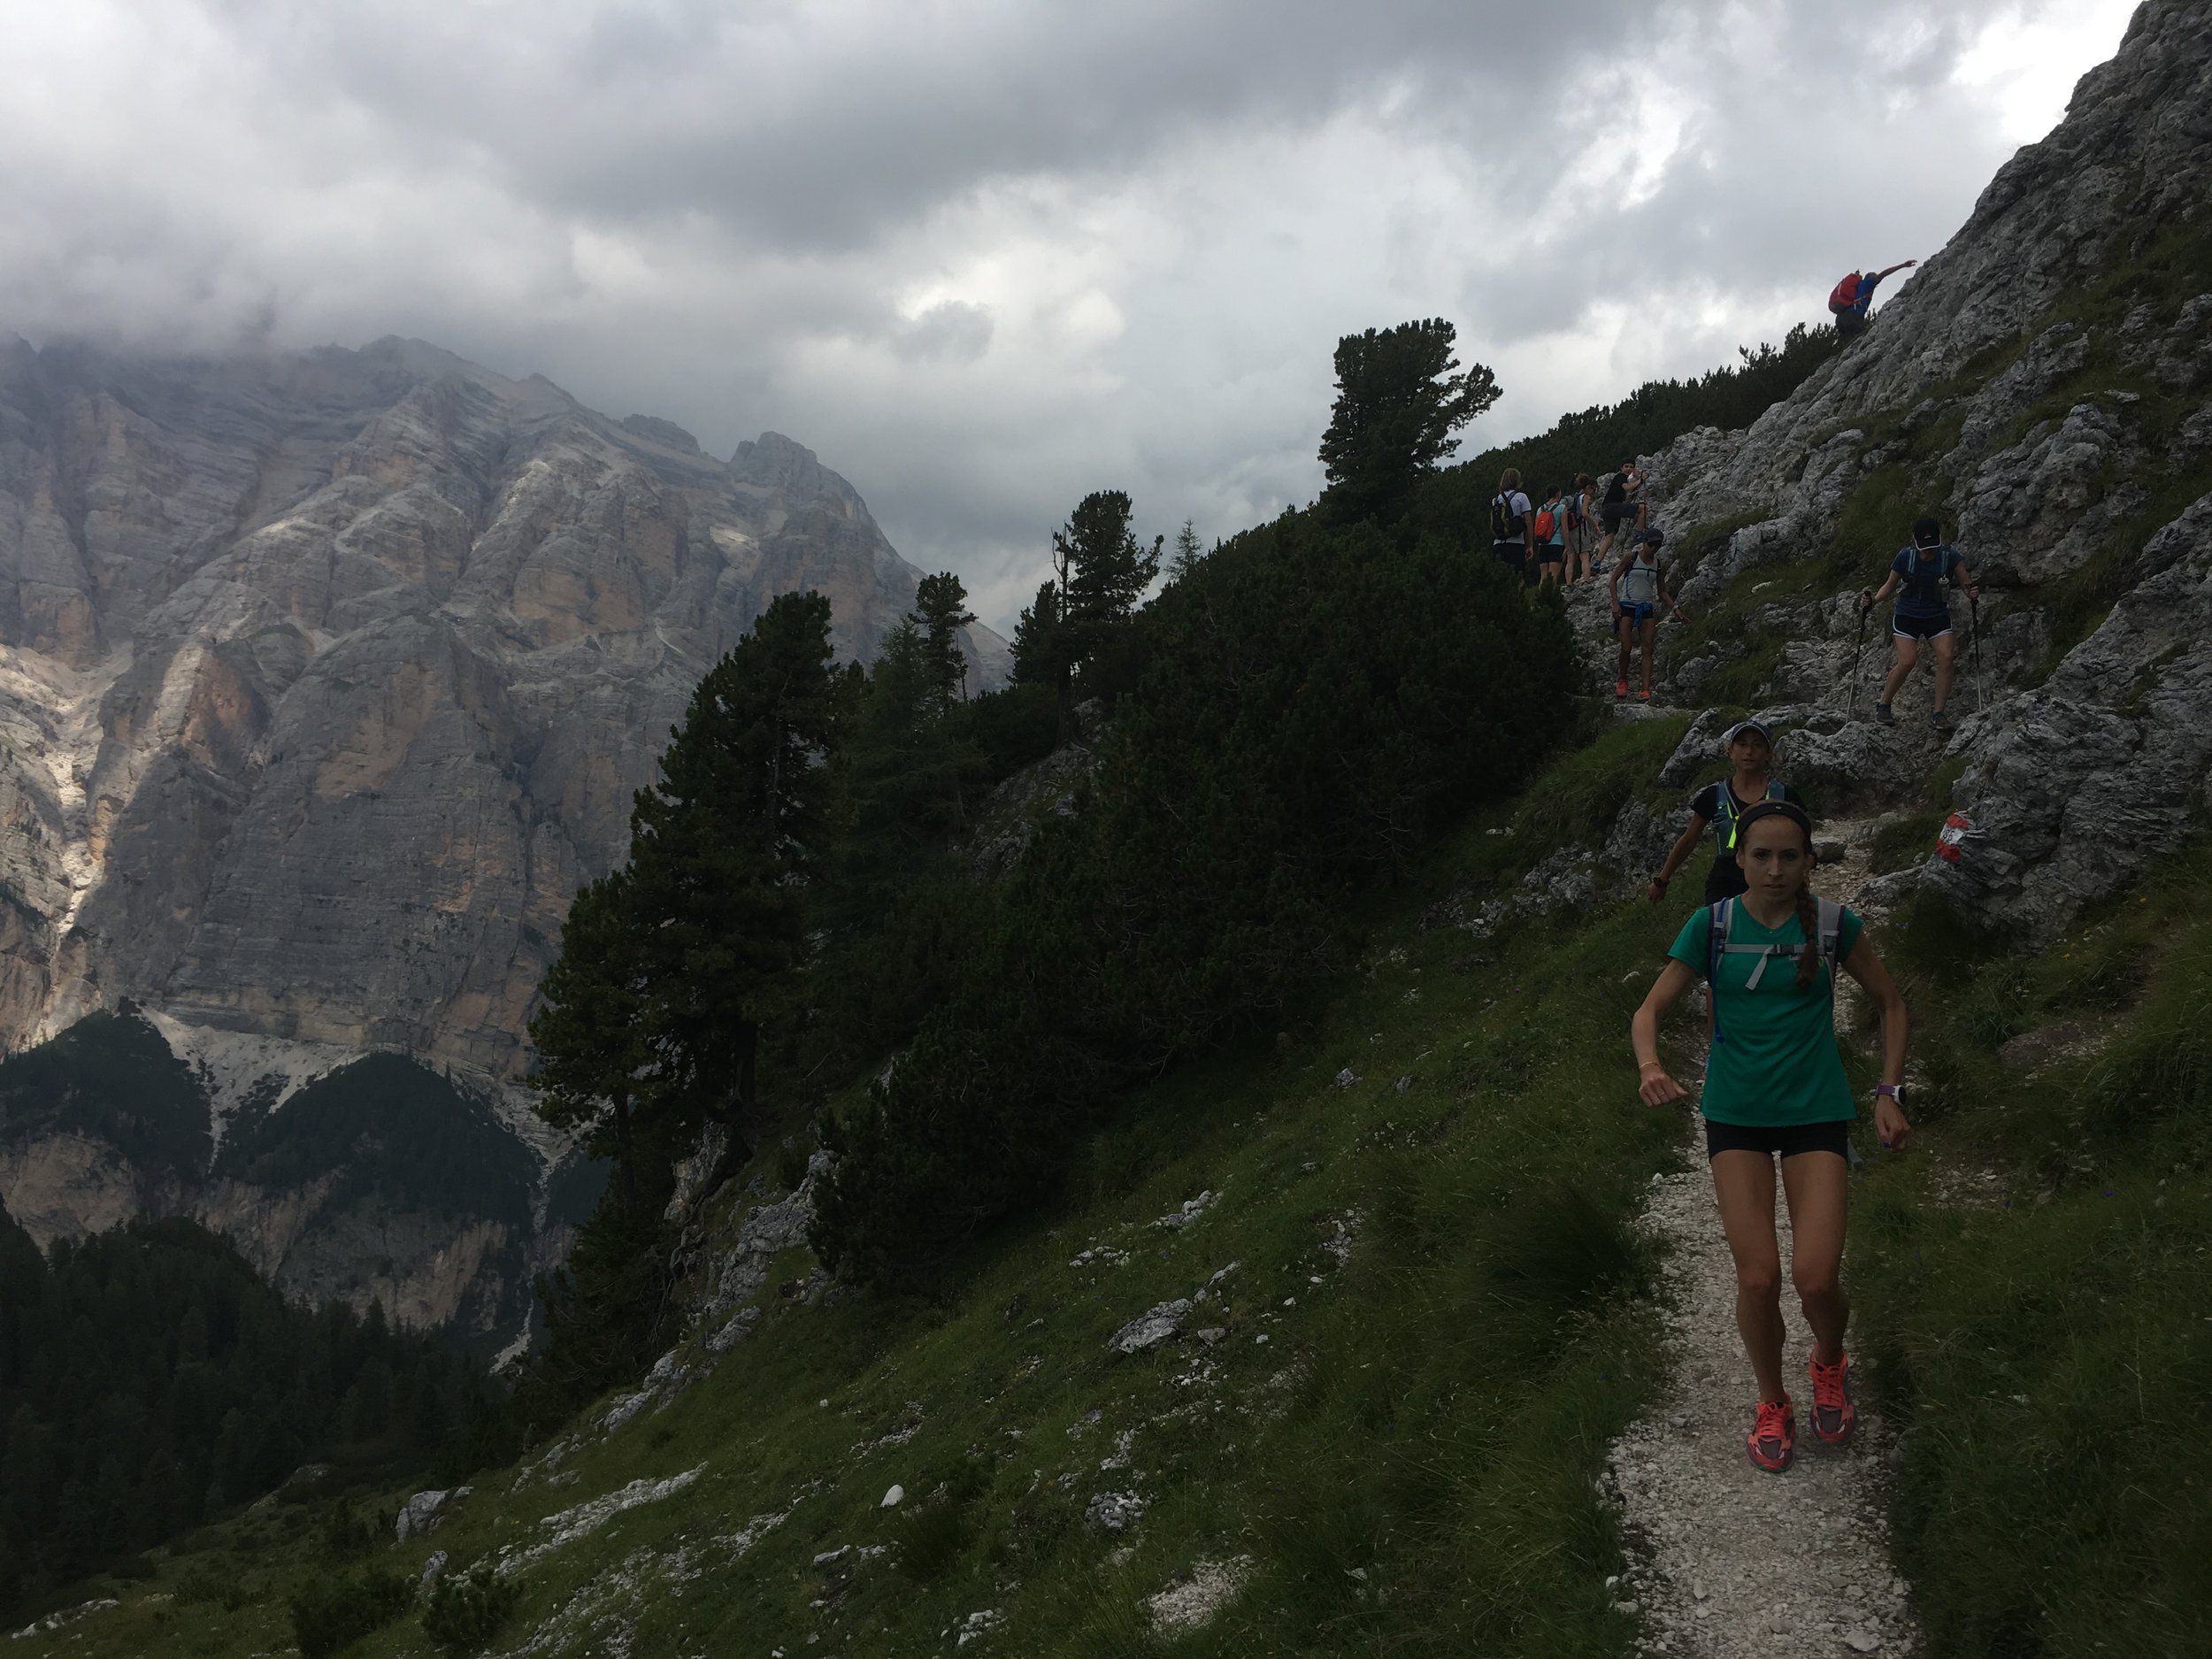  Dolomites Trail Running Alta Via 1 Hut to Hut RIfugio Fanes to Rifugio Lagazuoi 